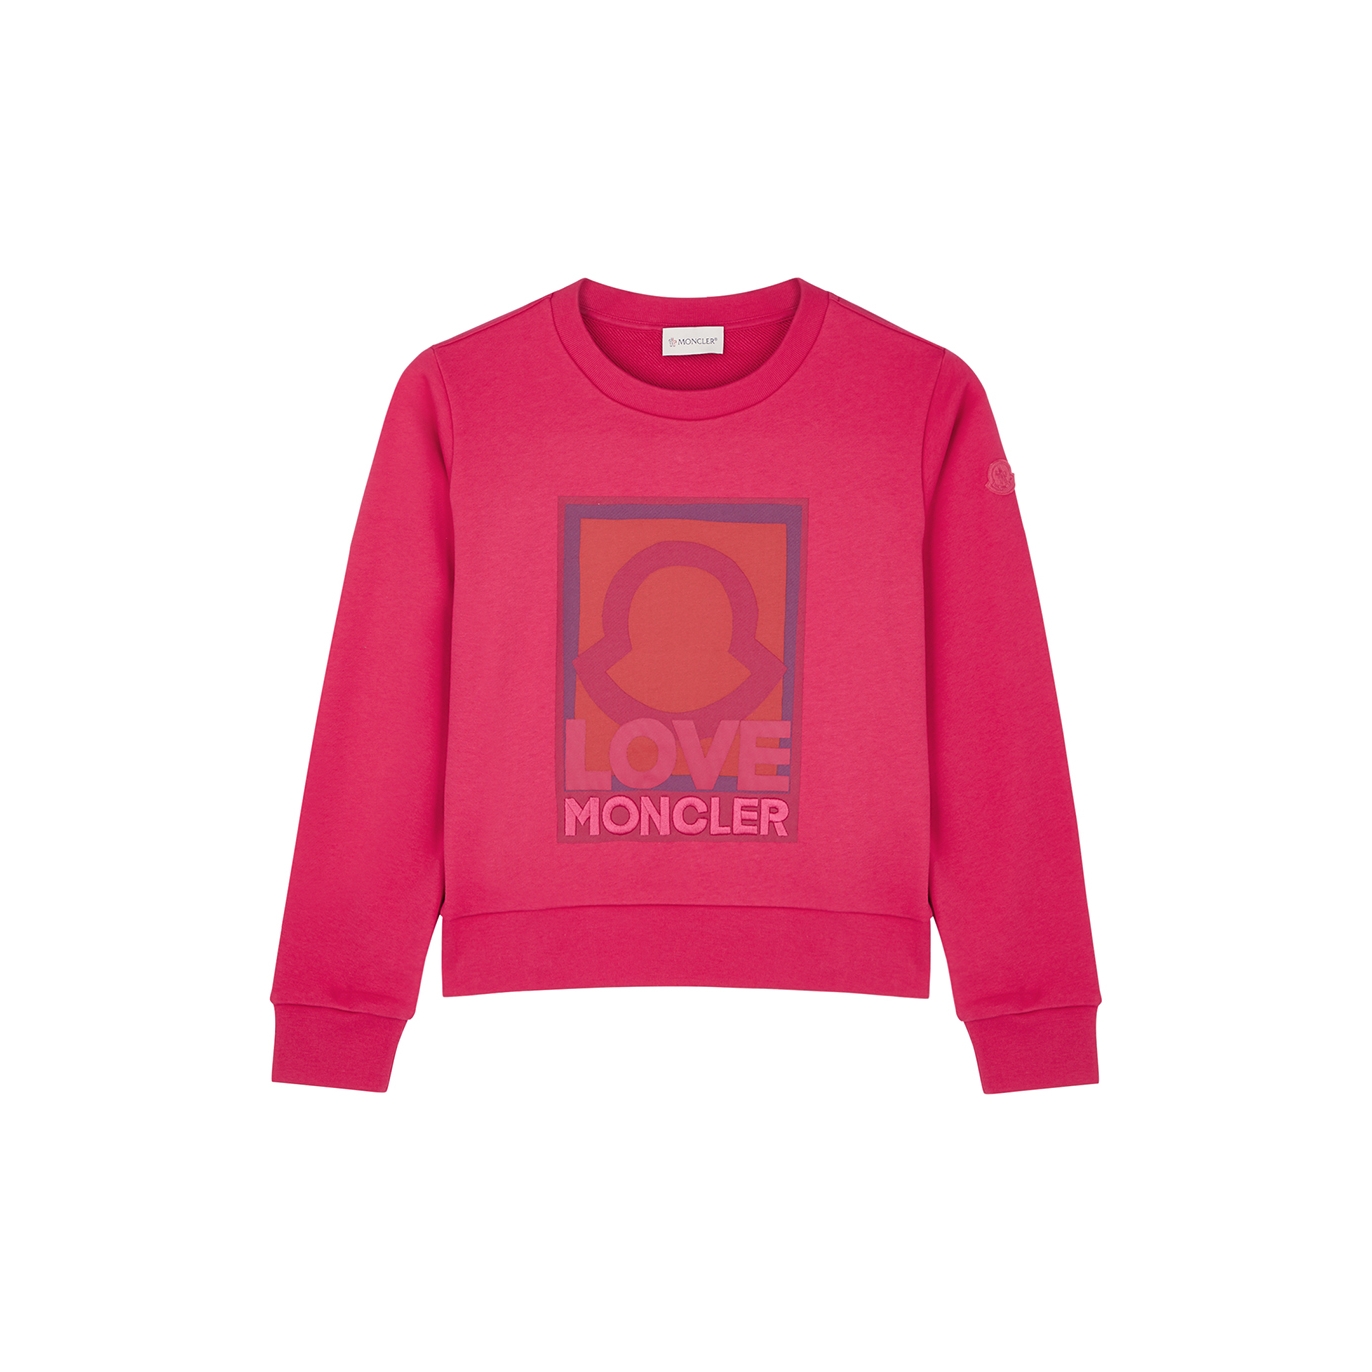 Moncler Kids Printed Cotton Sweatshirt (12-14 Years) - Pink